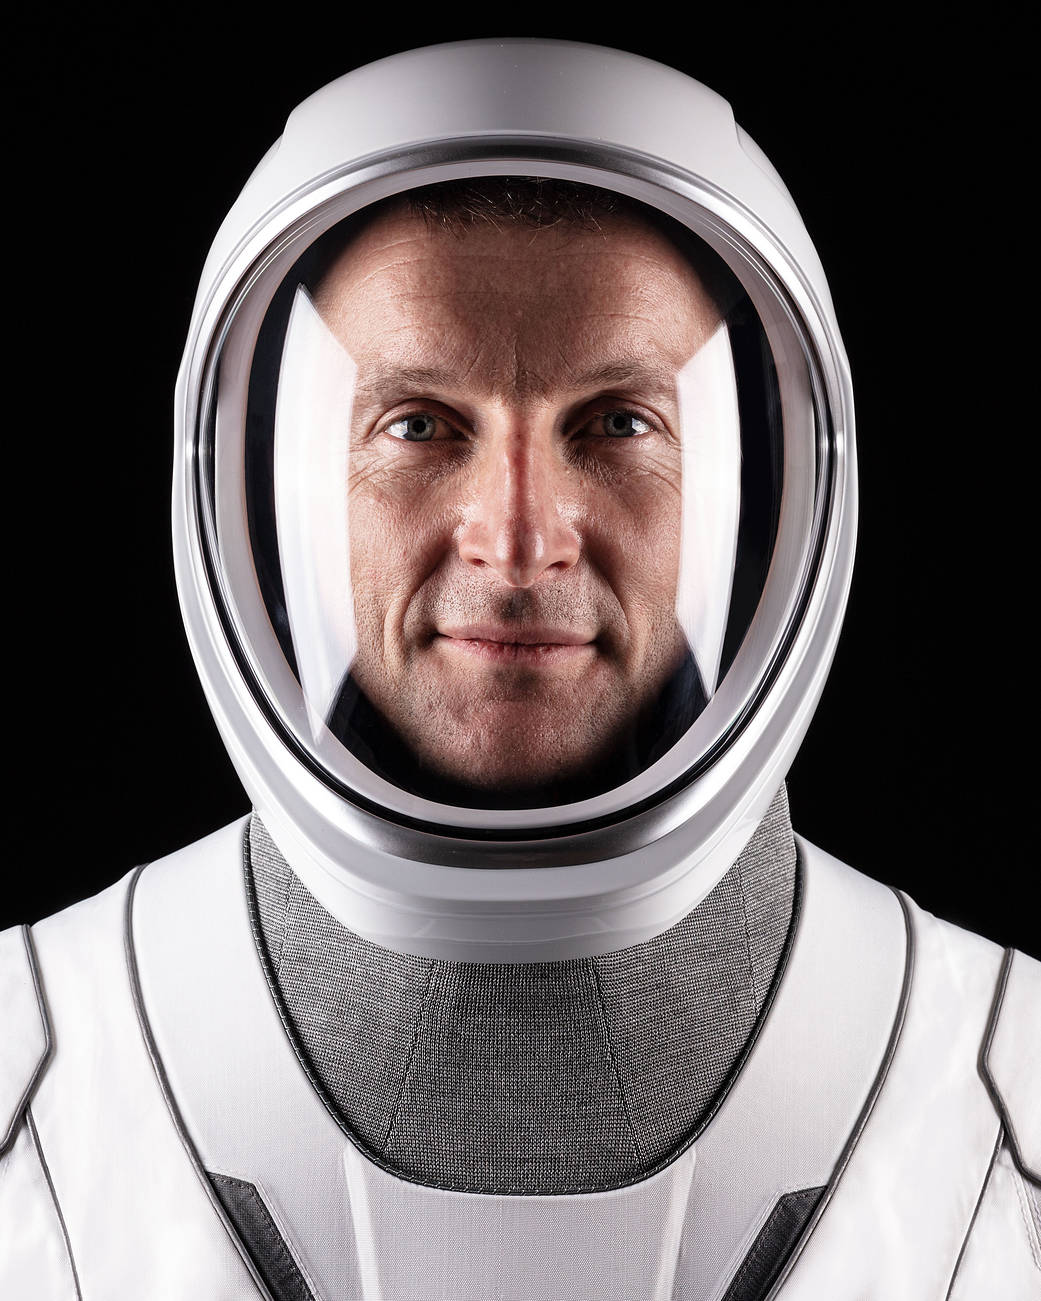 SpaceX Crew-3 Mission Specialist Matthias Maurer